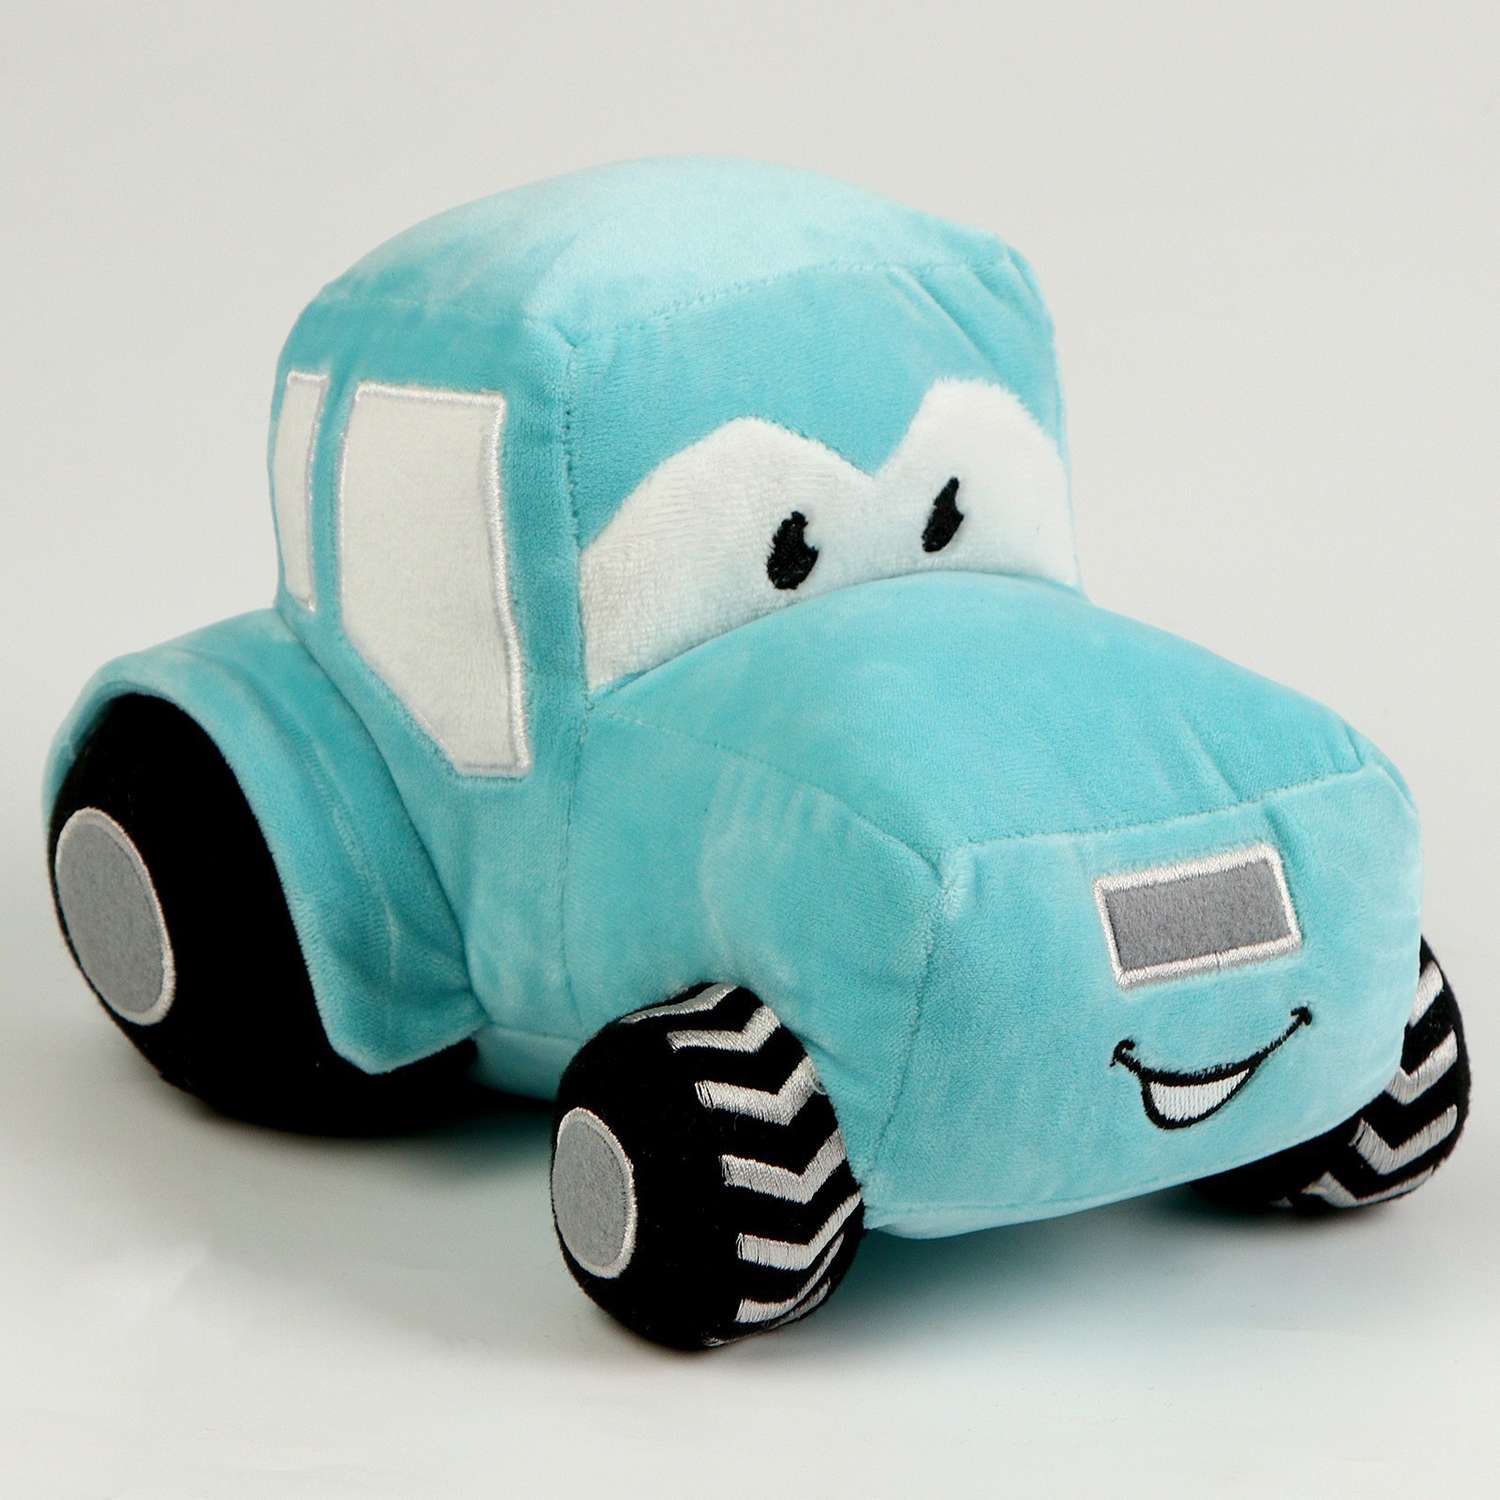 Мягкая игрушка Milo Toys «Трактор» цвет голубой - фото 3